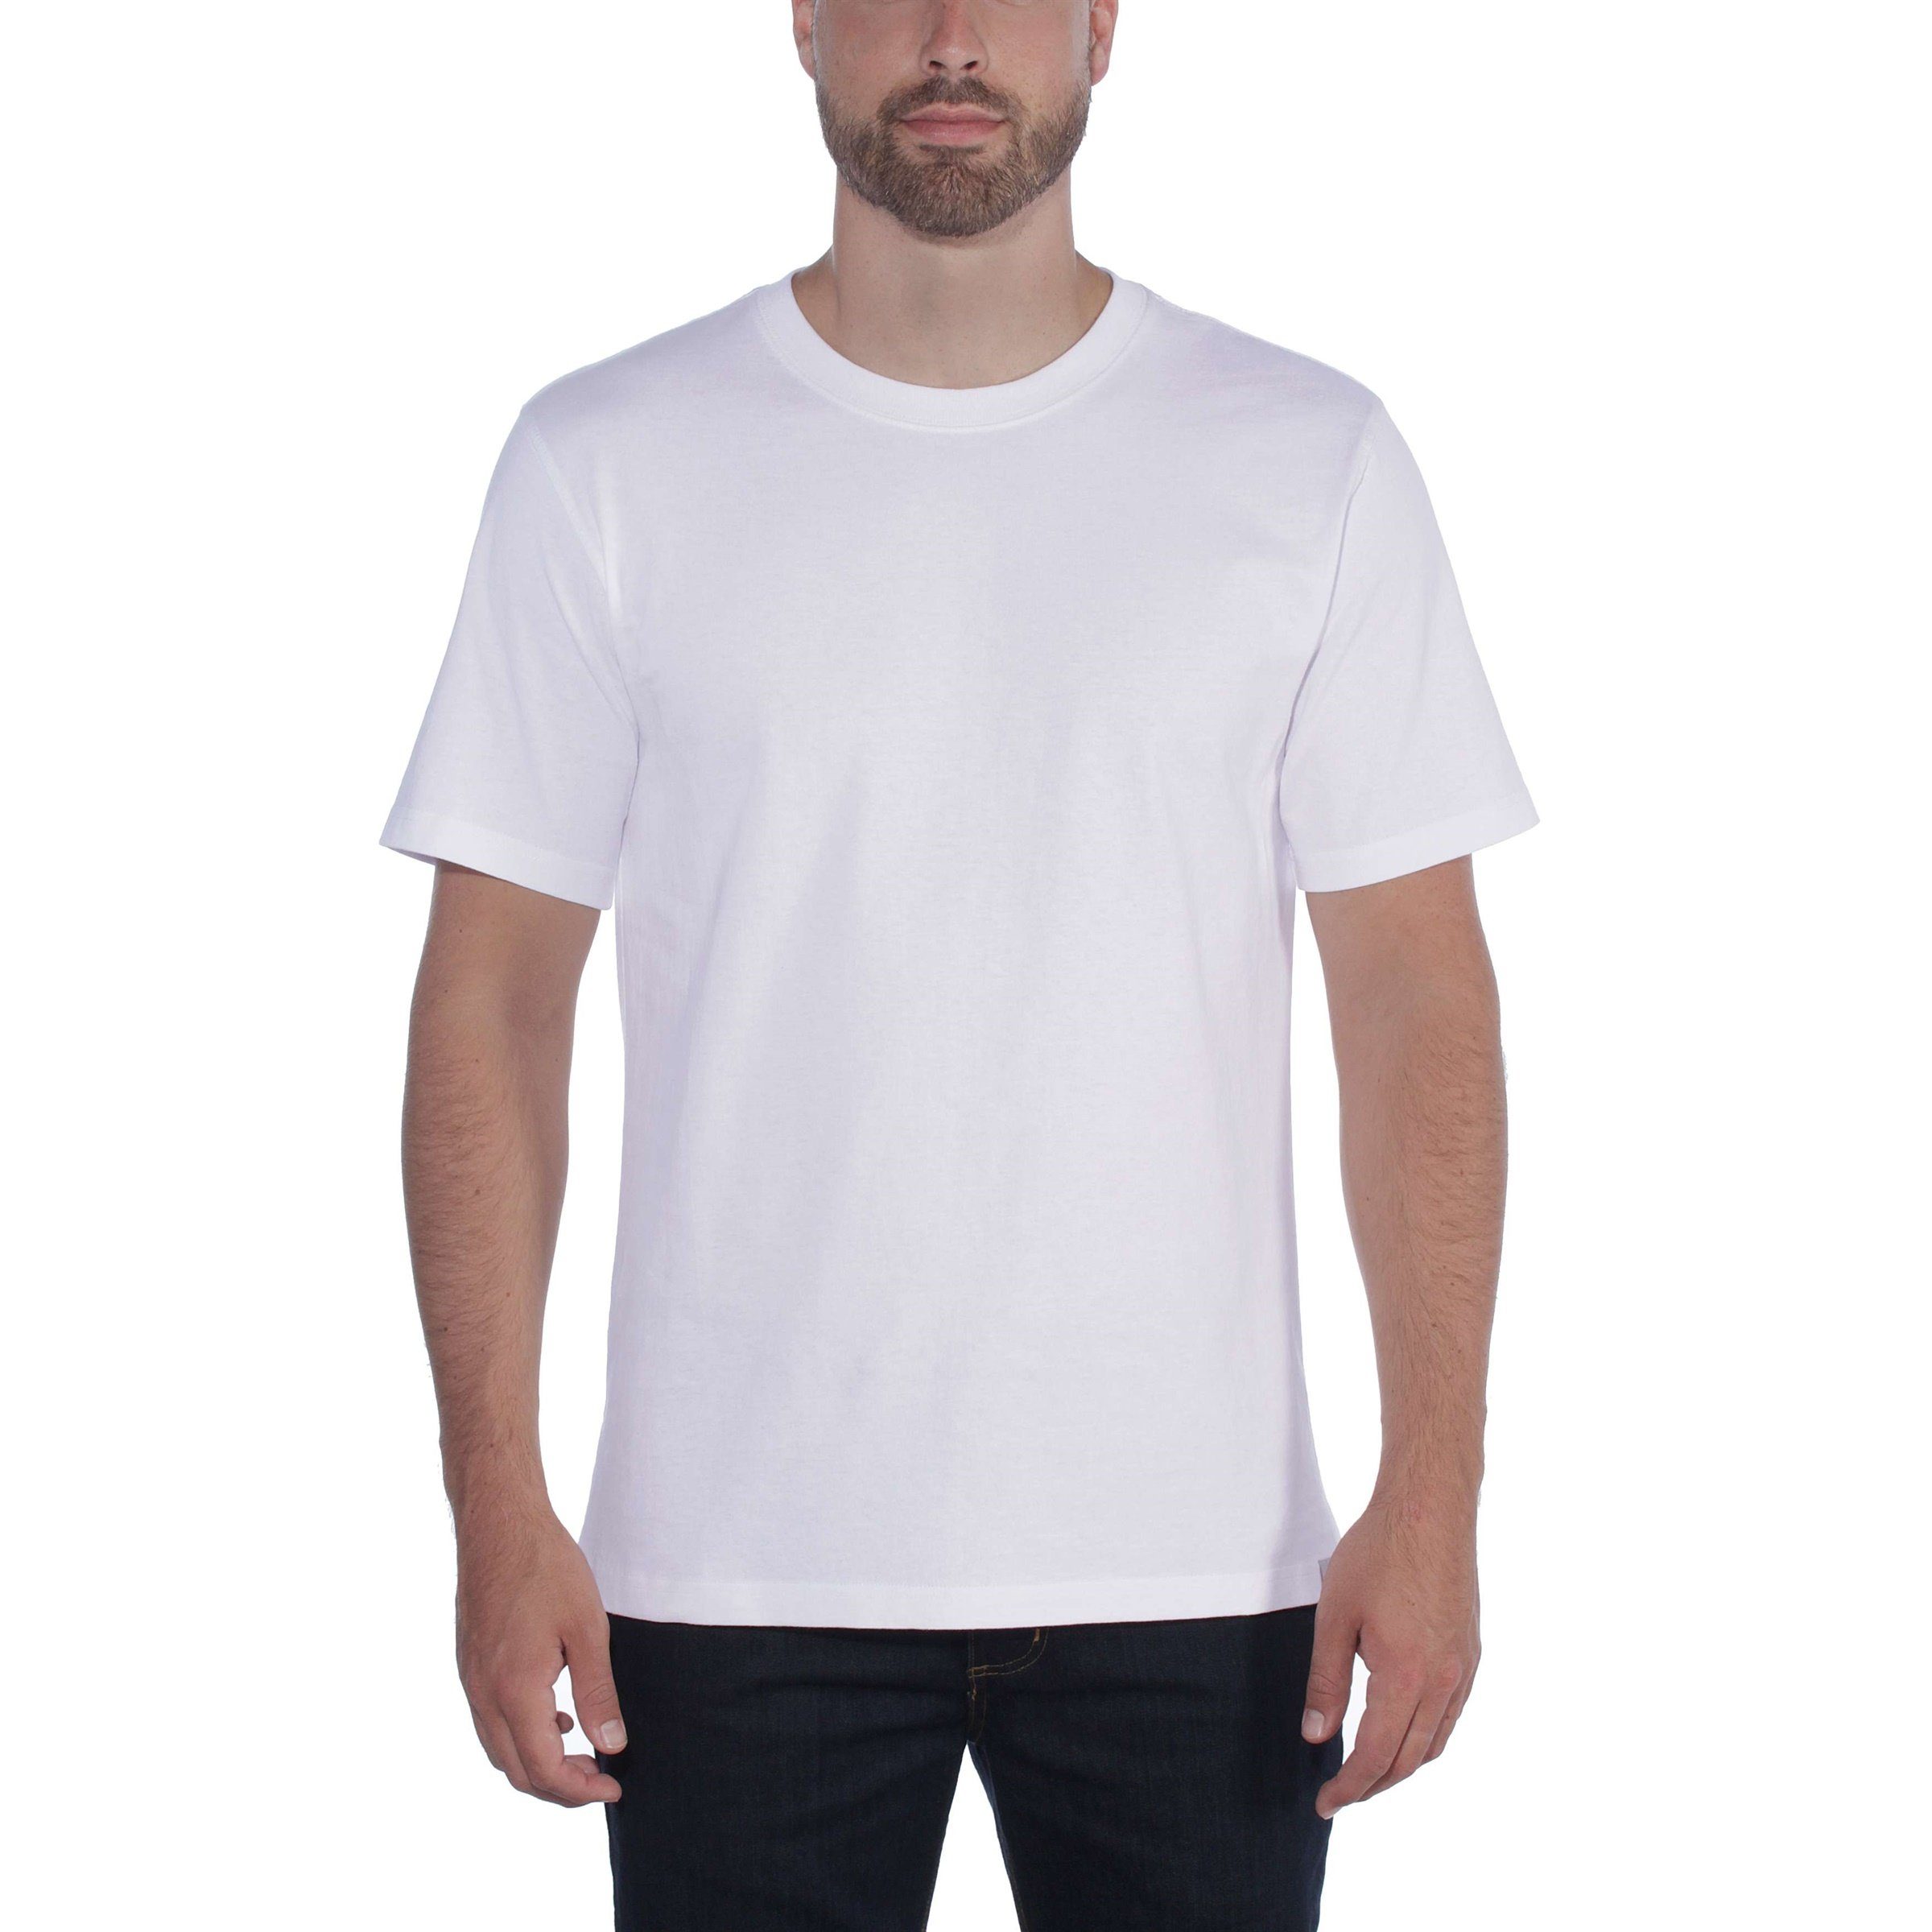 T-Shirt Heavyweight Herren Short-Sleeve black Fit Carhartt Carhartt Adult T-Shirt Relaxed